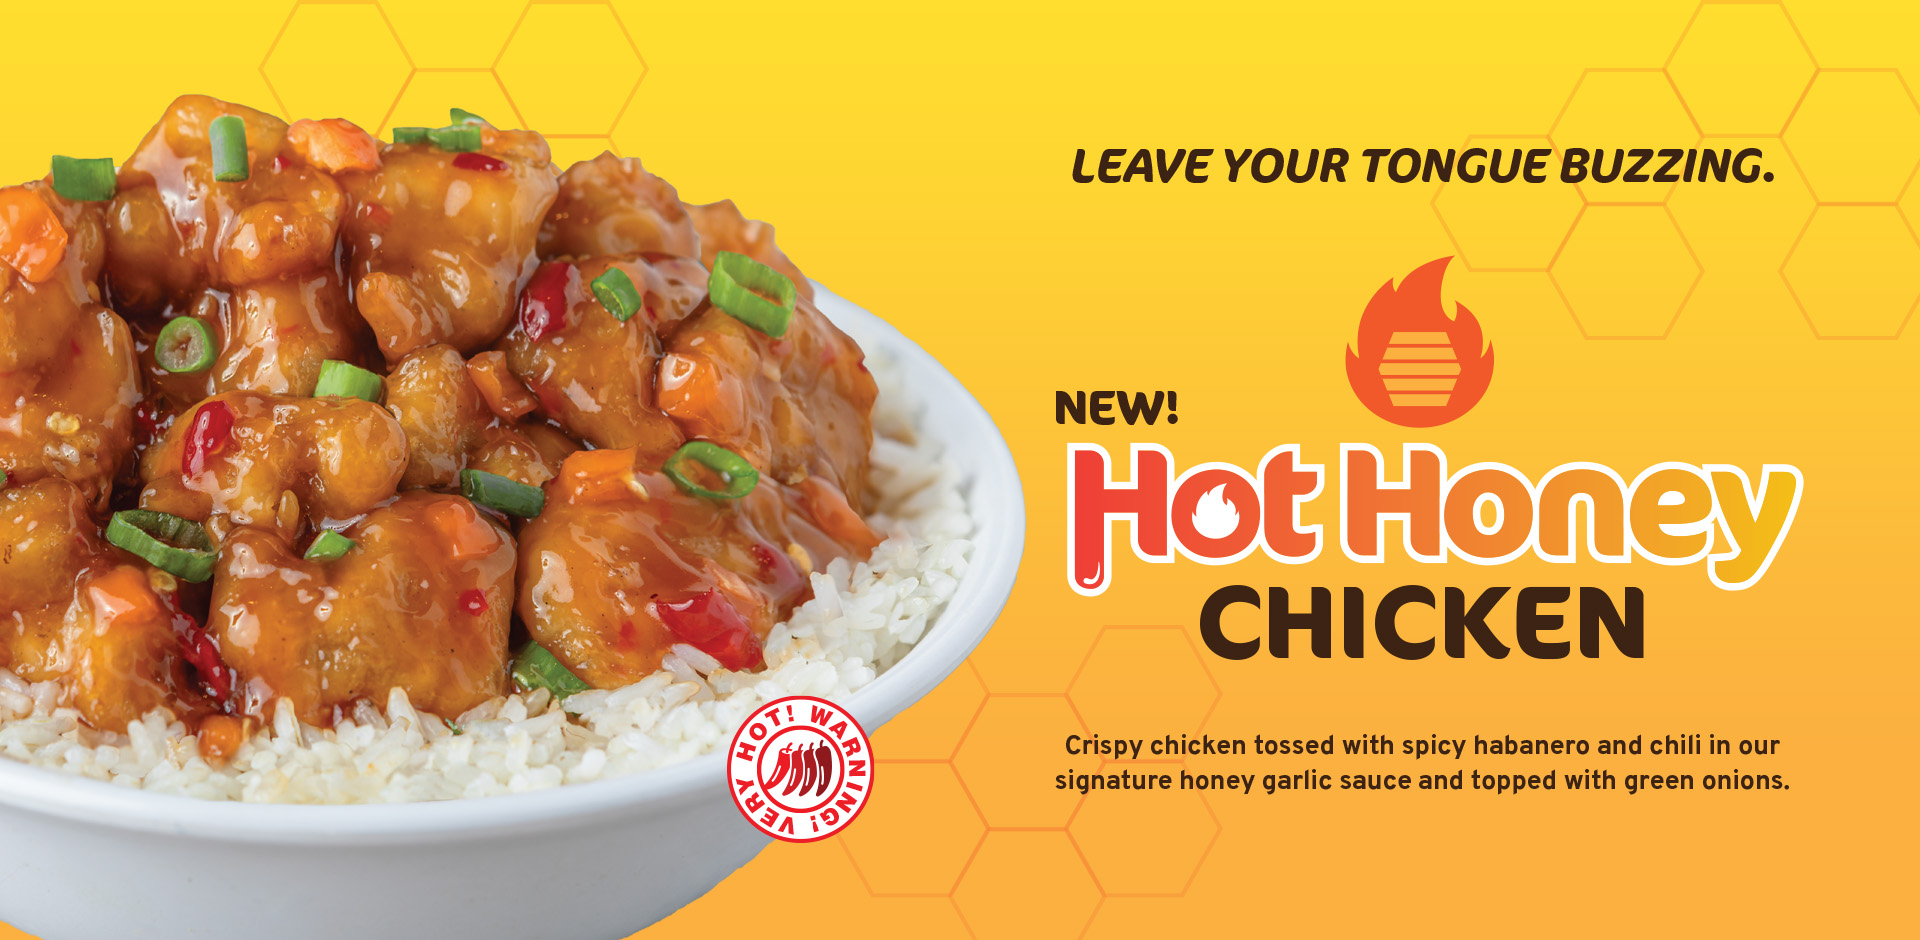 NEW Hot Honey Chicken!